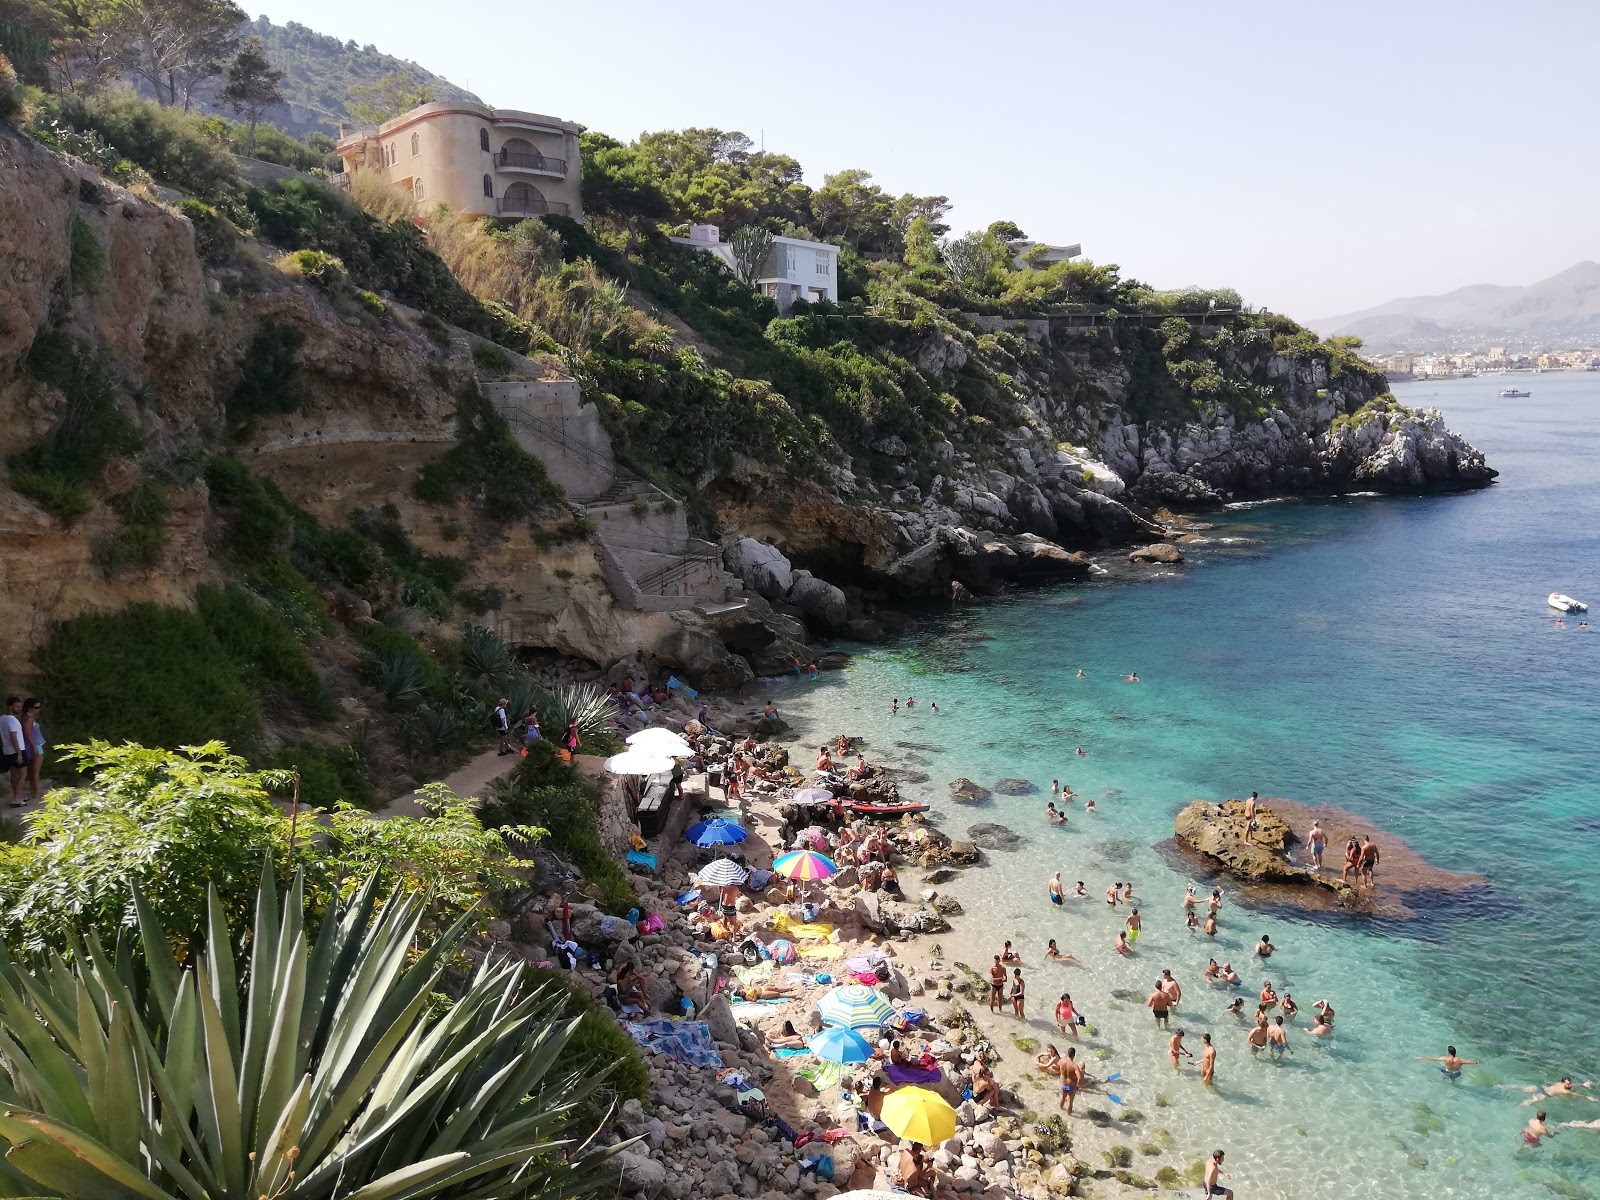 Foto de Spiaggia dei Francesi ubicado en área natural